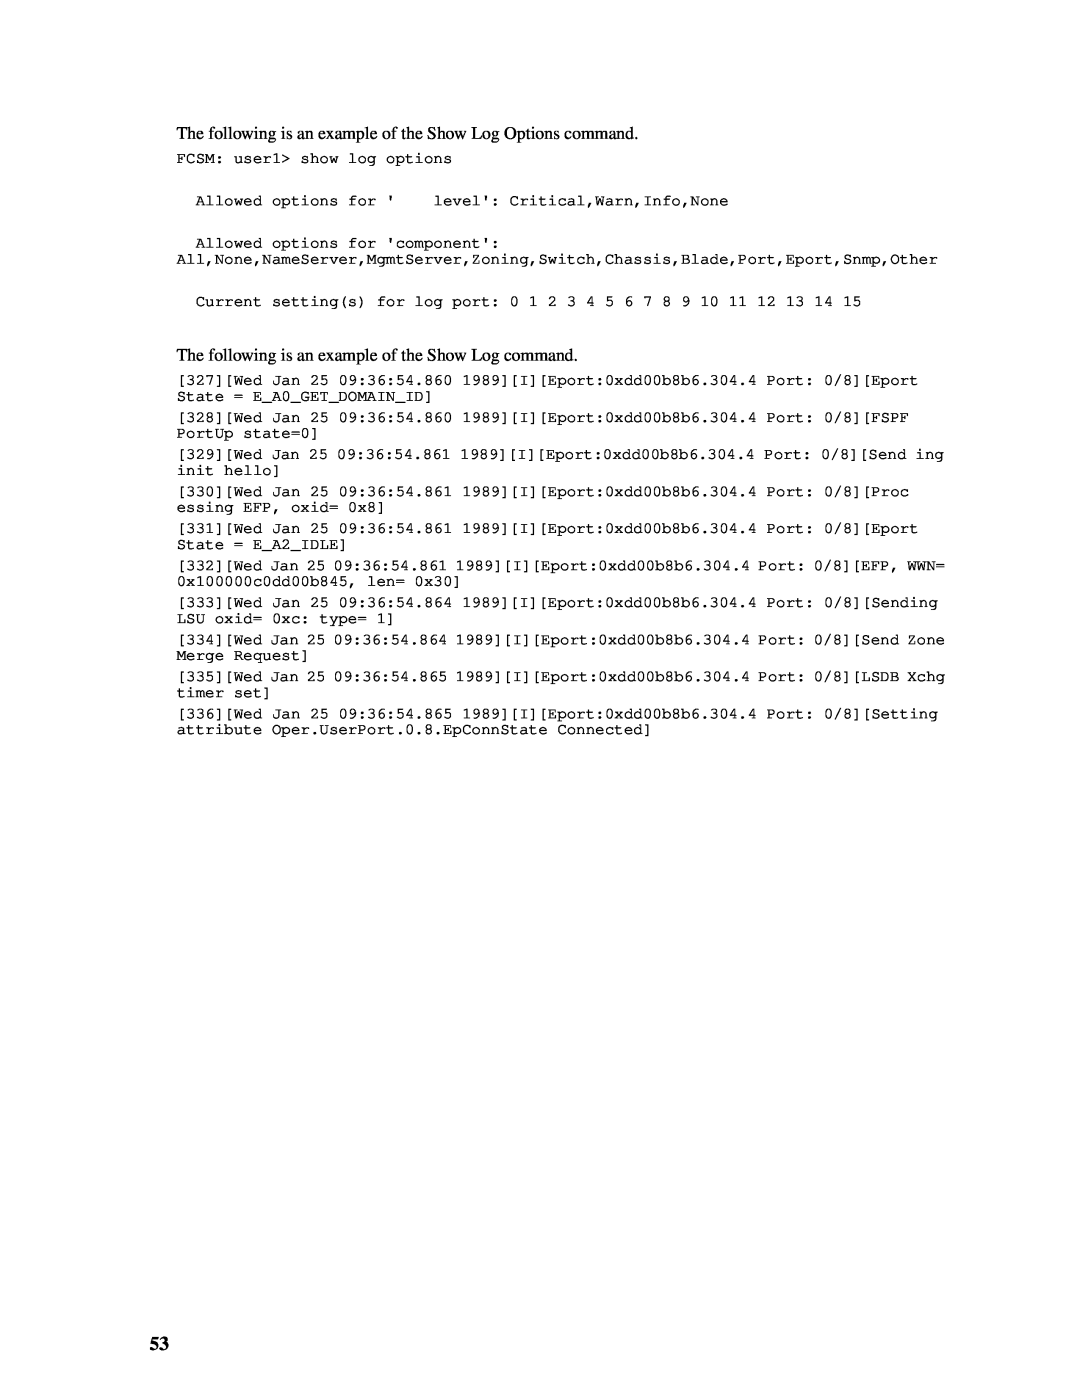 Intel SBCEFCSW manual FCSM: user1> show log options 